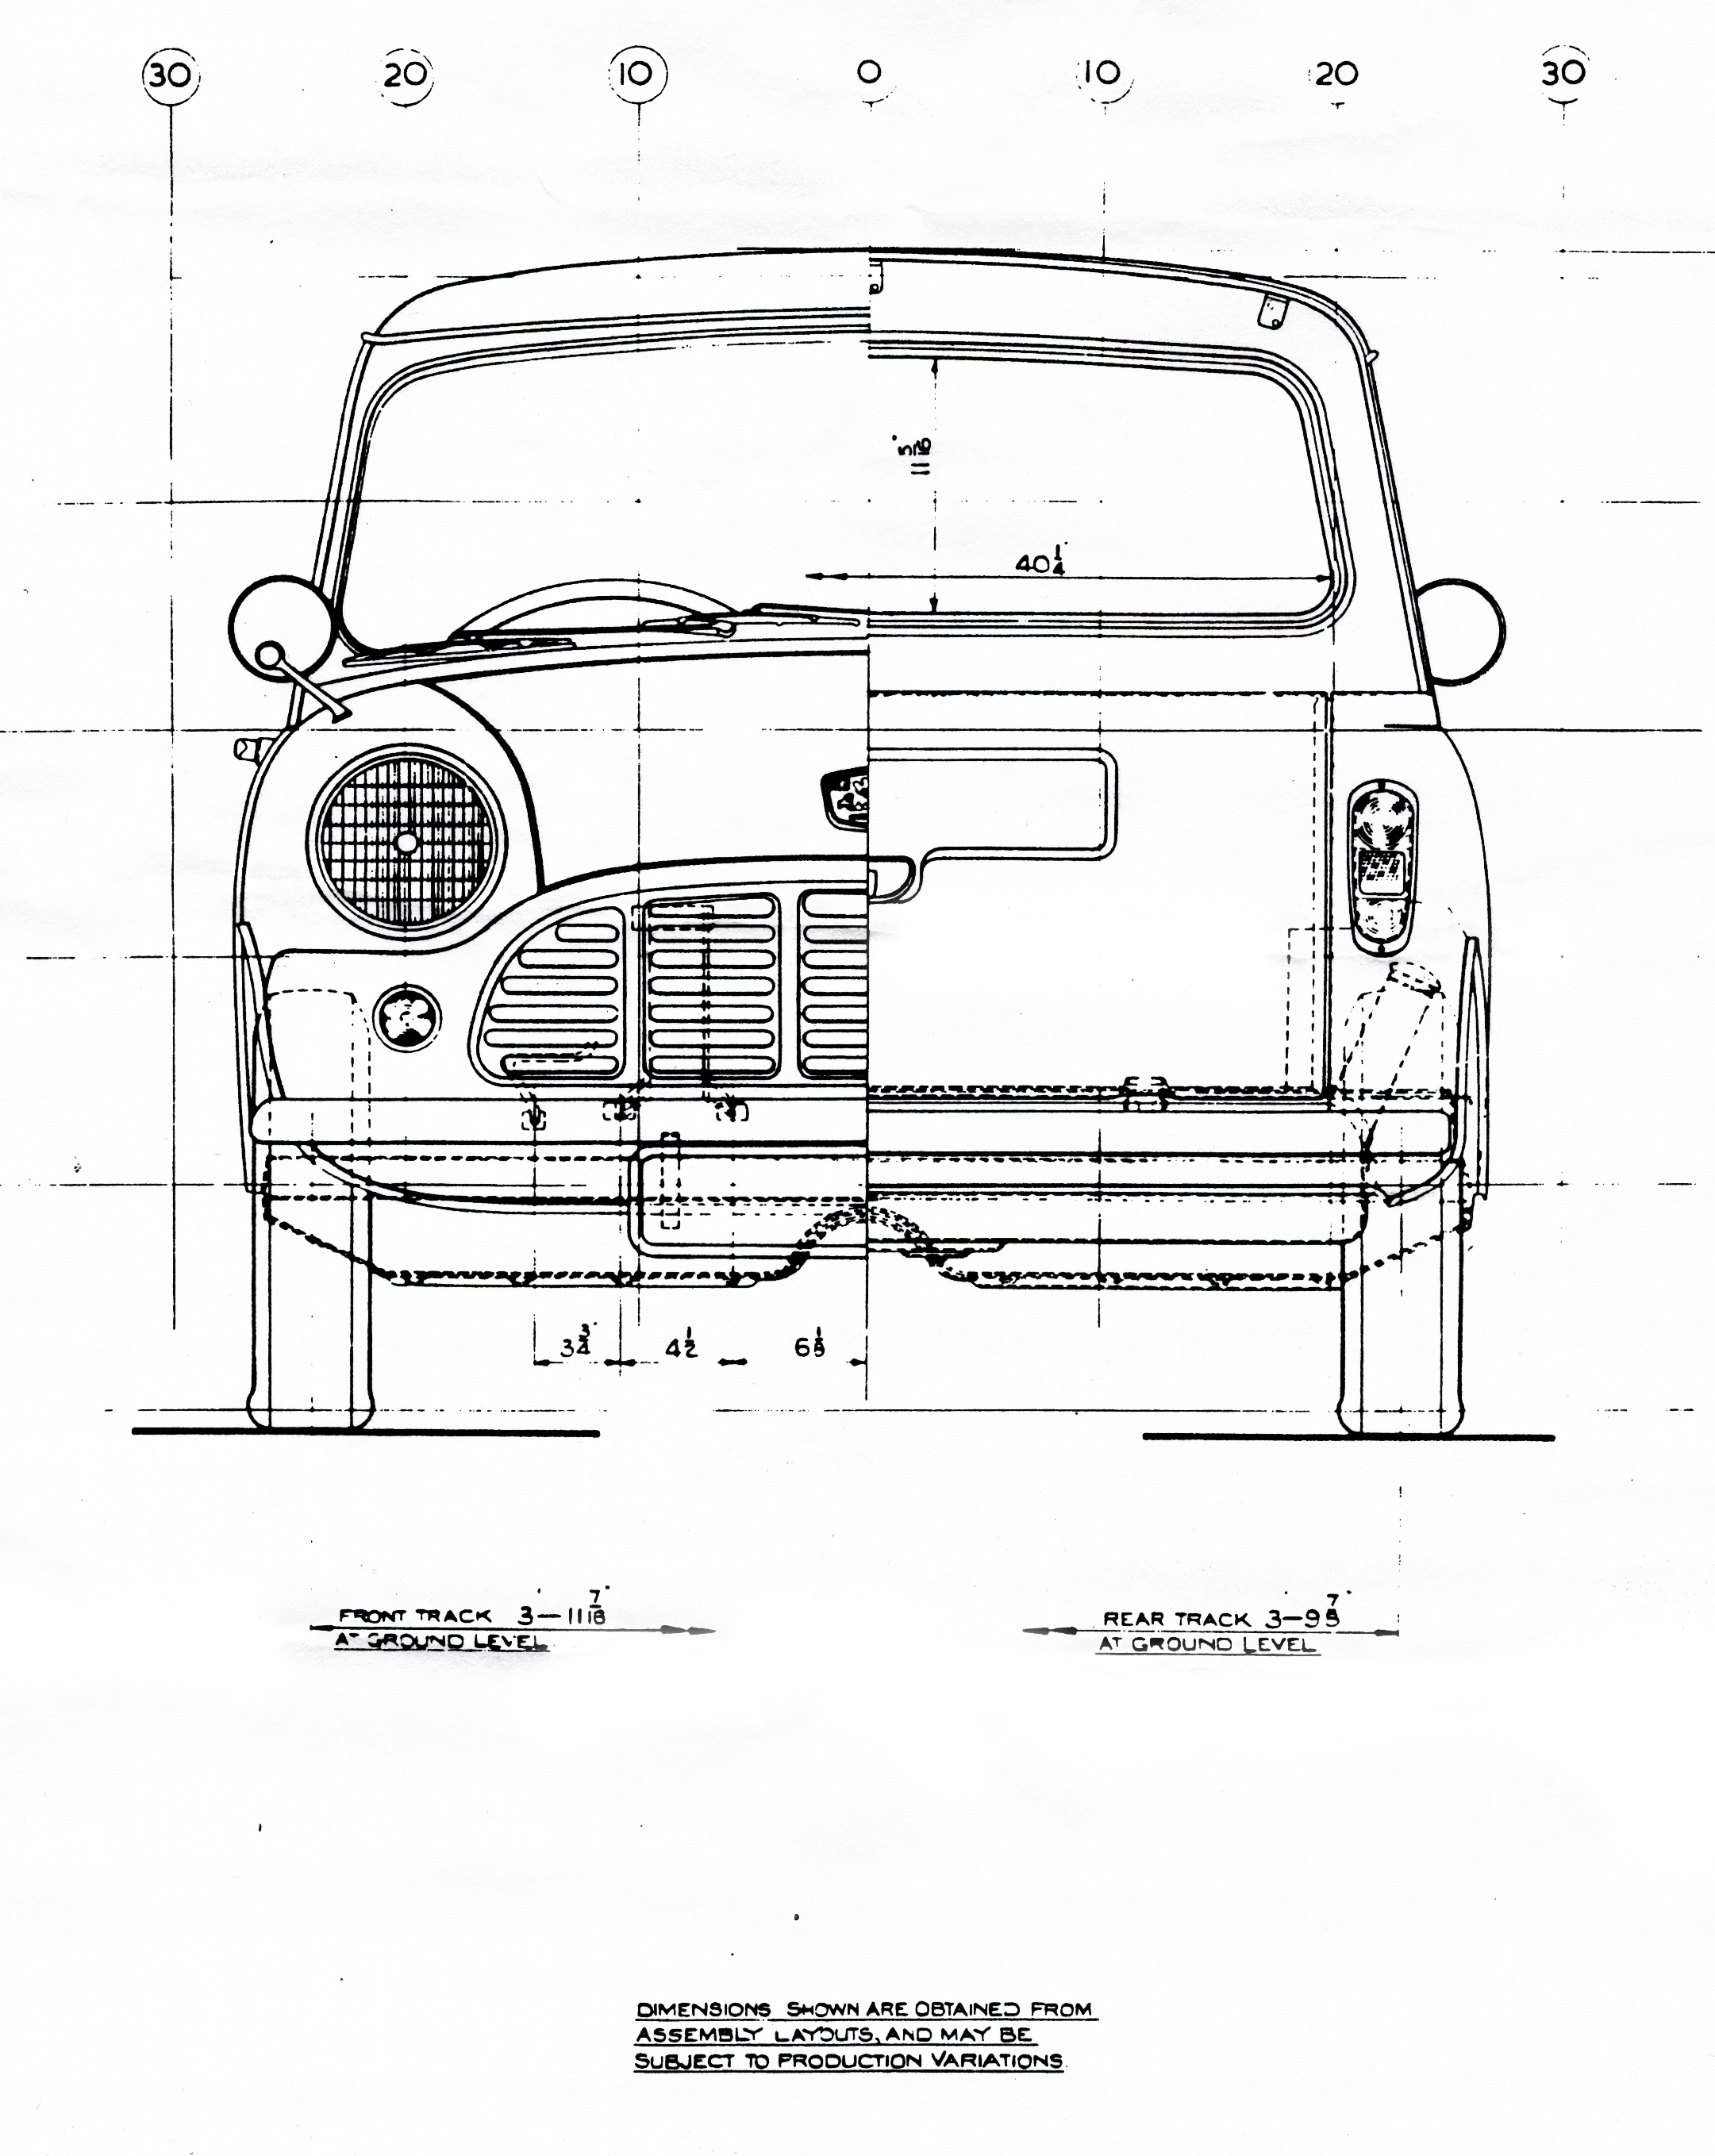 Mini Pick-up blueprint